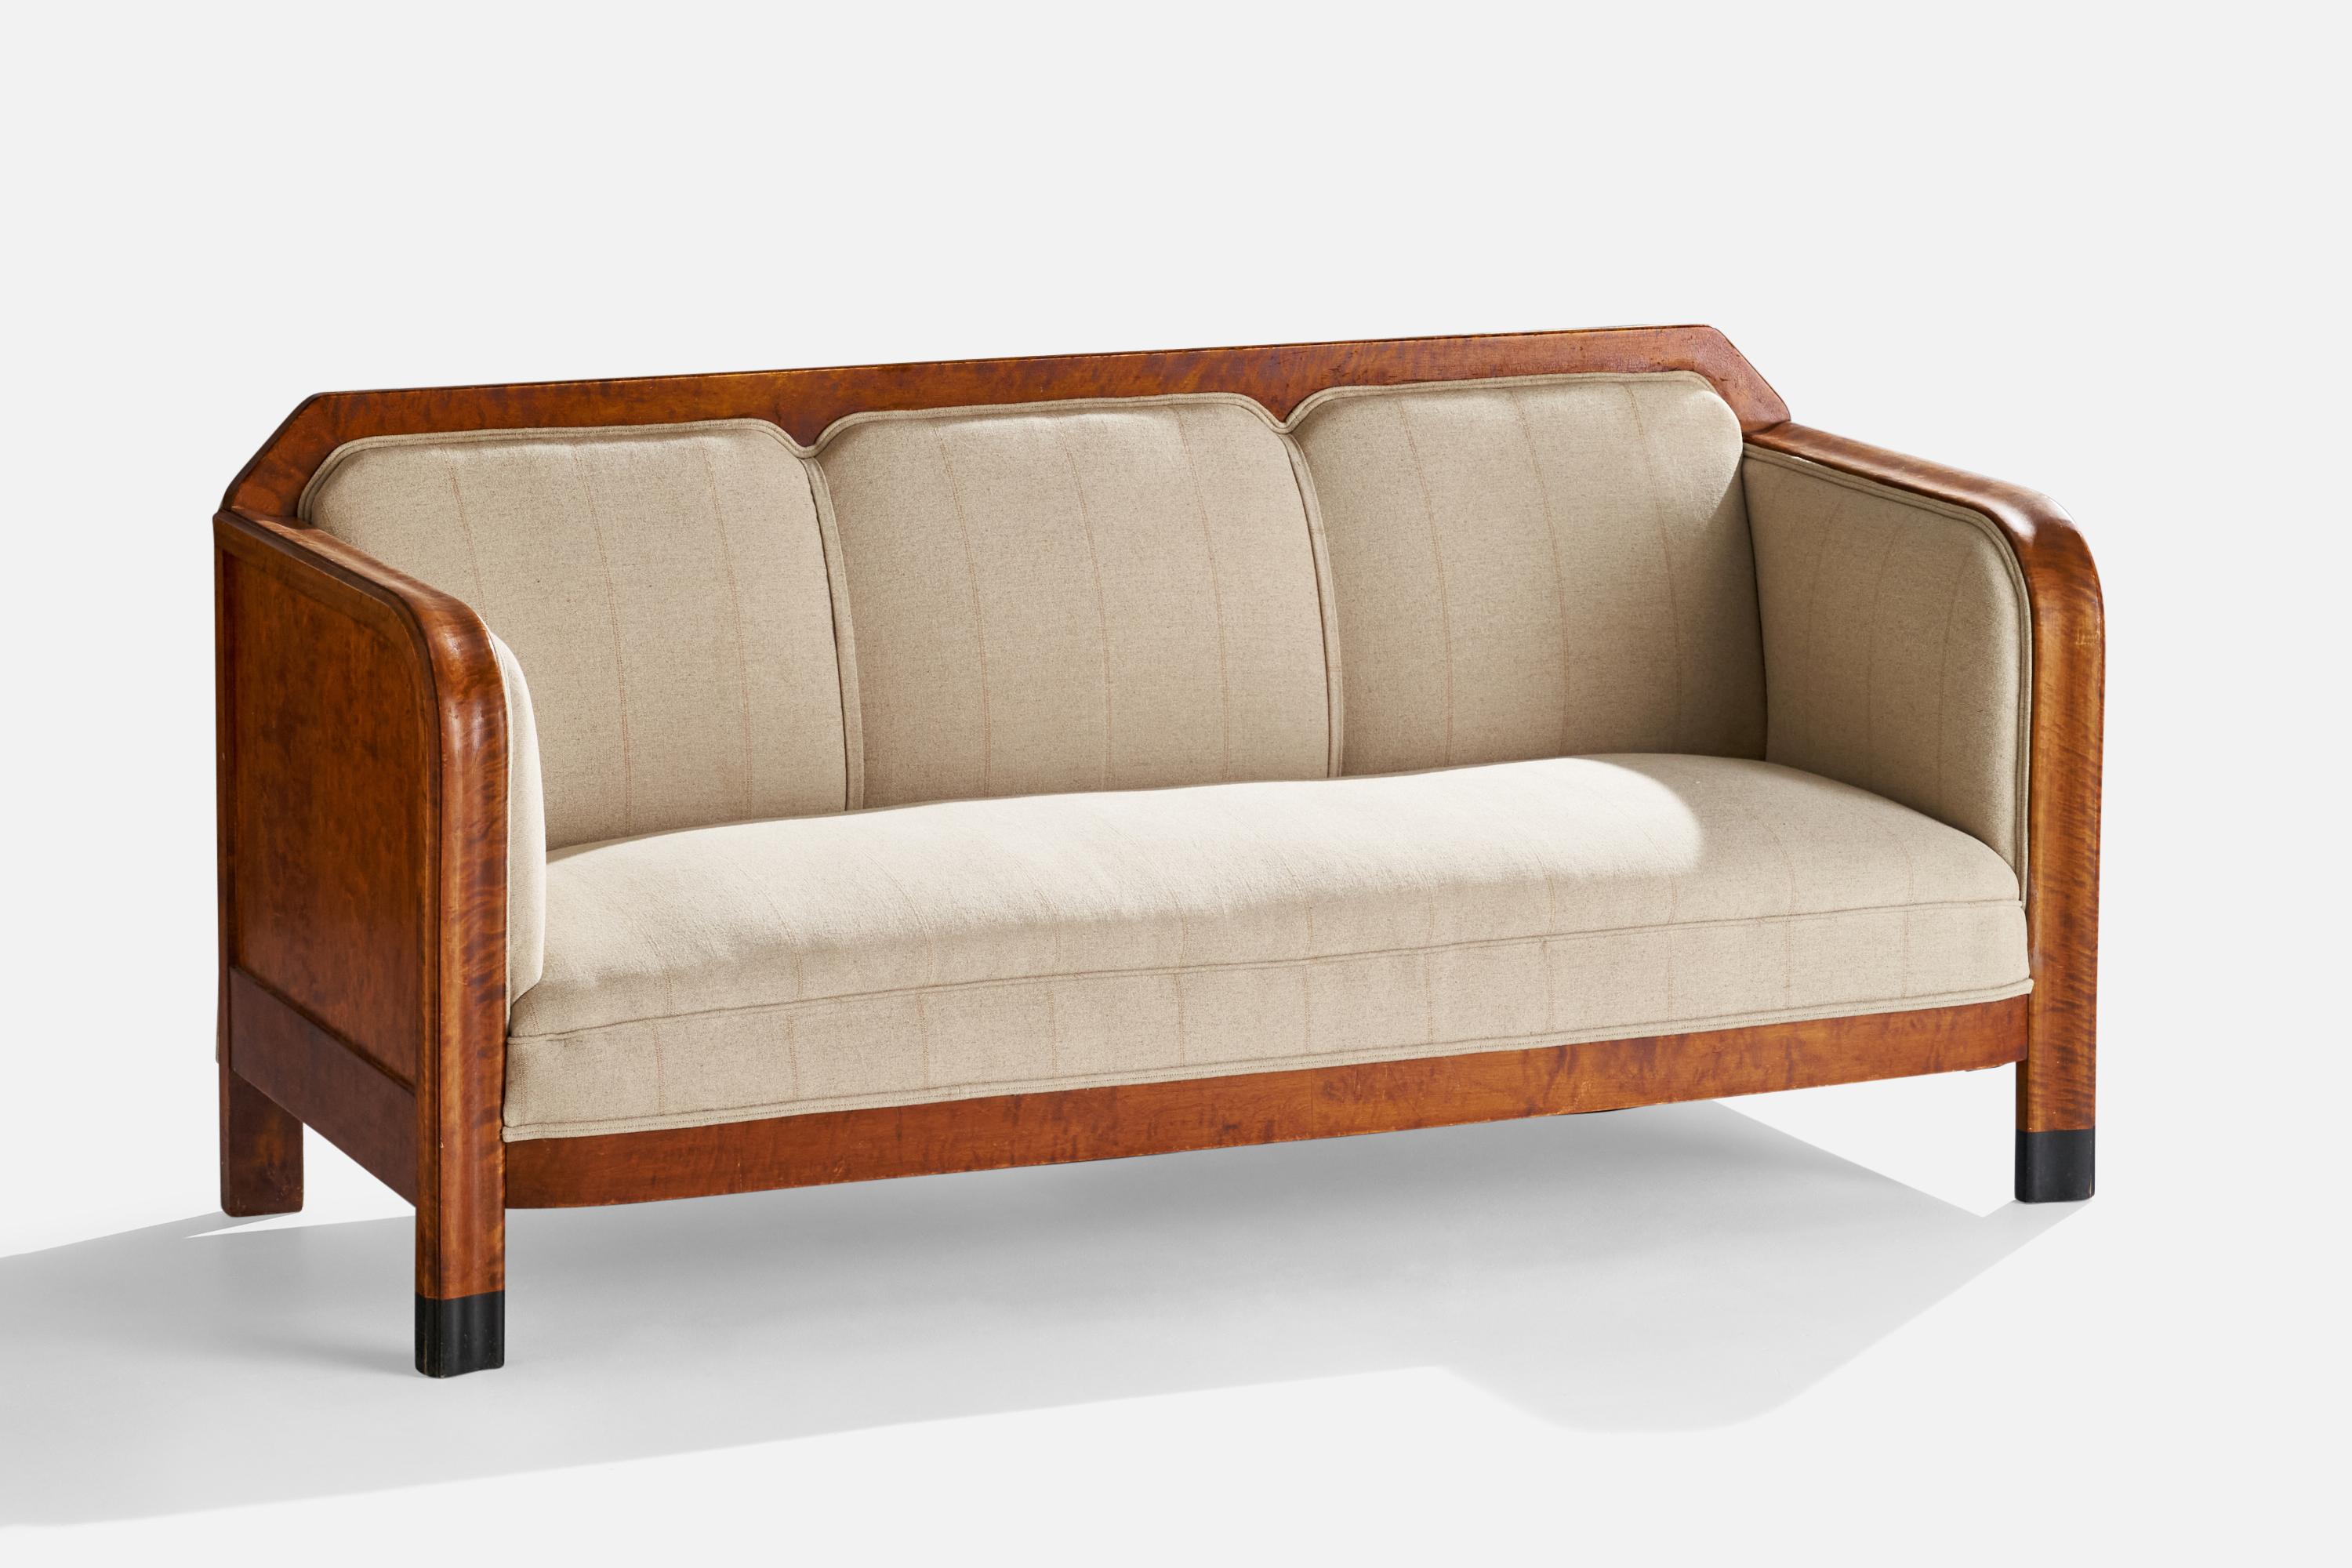 Ein Sofa aus Birke und gestreiftem beigem Stoff, entworfen und hergestellt in Schweden, um 1920.

Sitzhöhe: 16.5